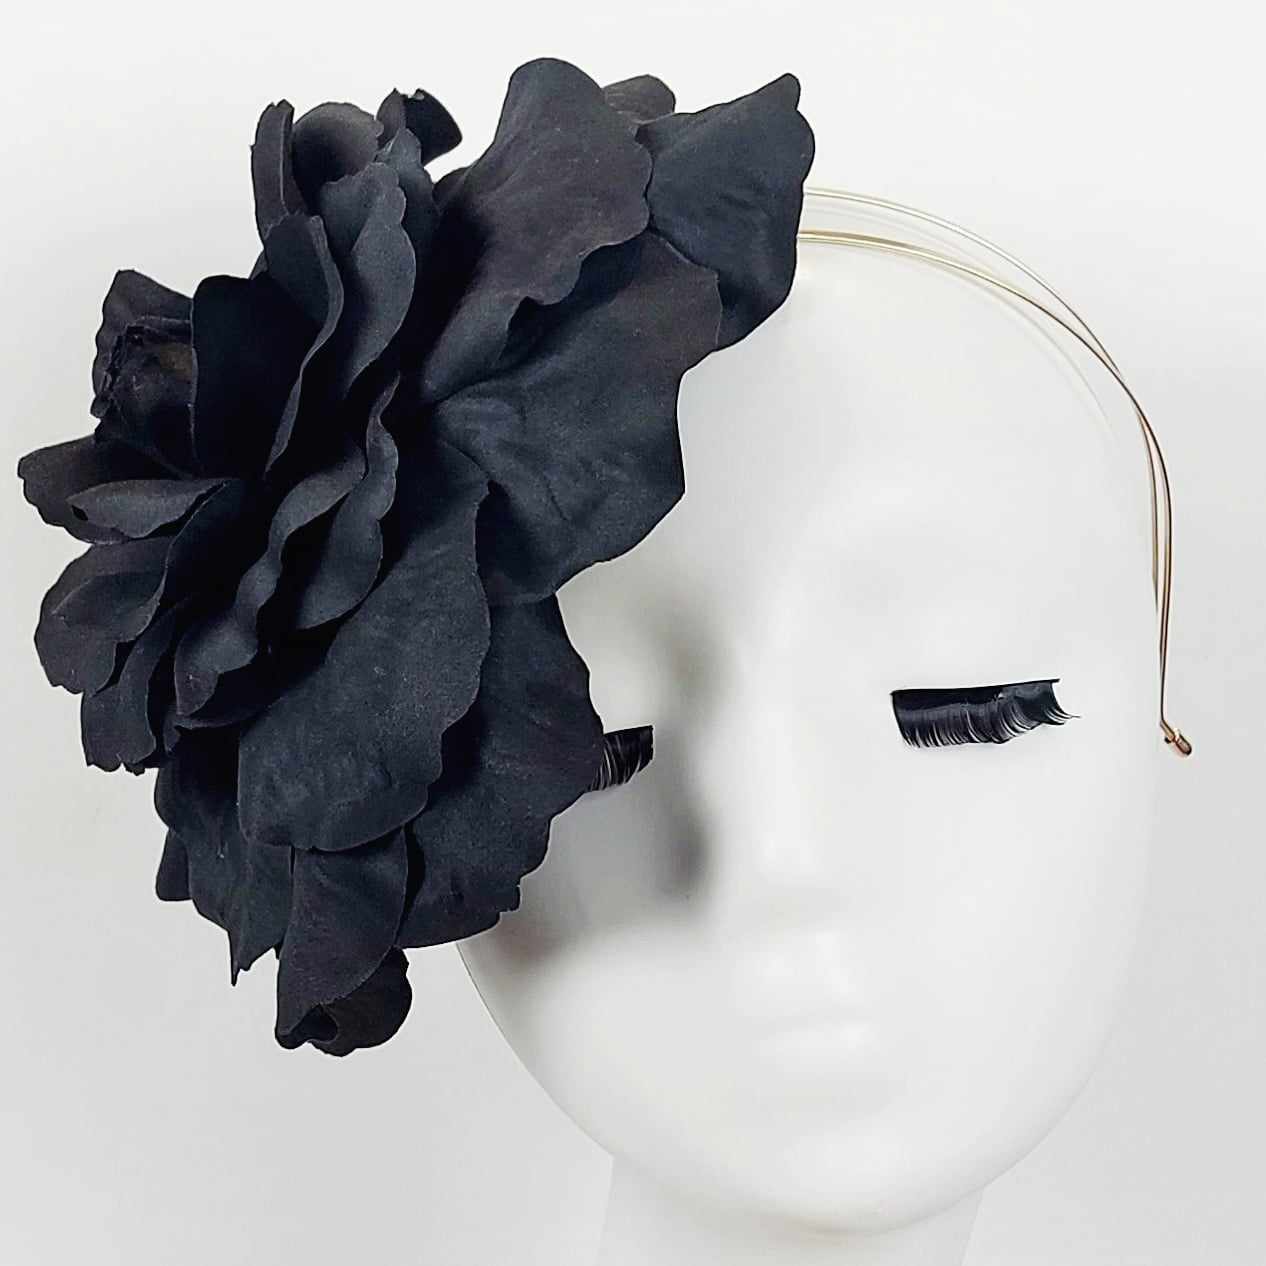 single black flower fascinator headpiece wear to the races